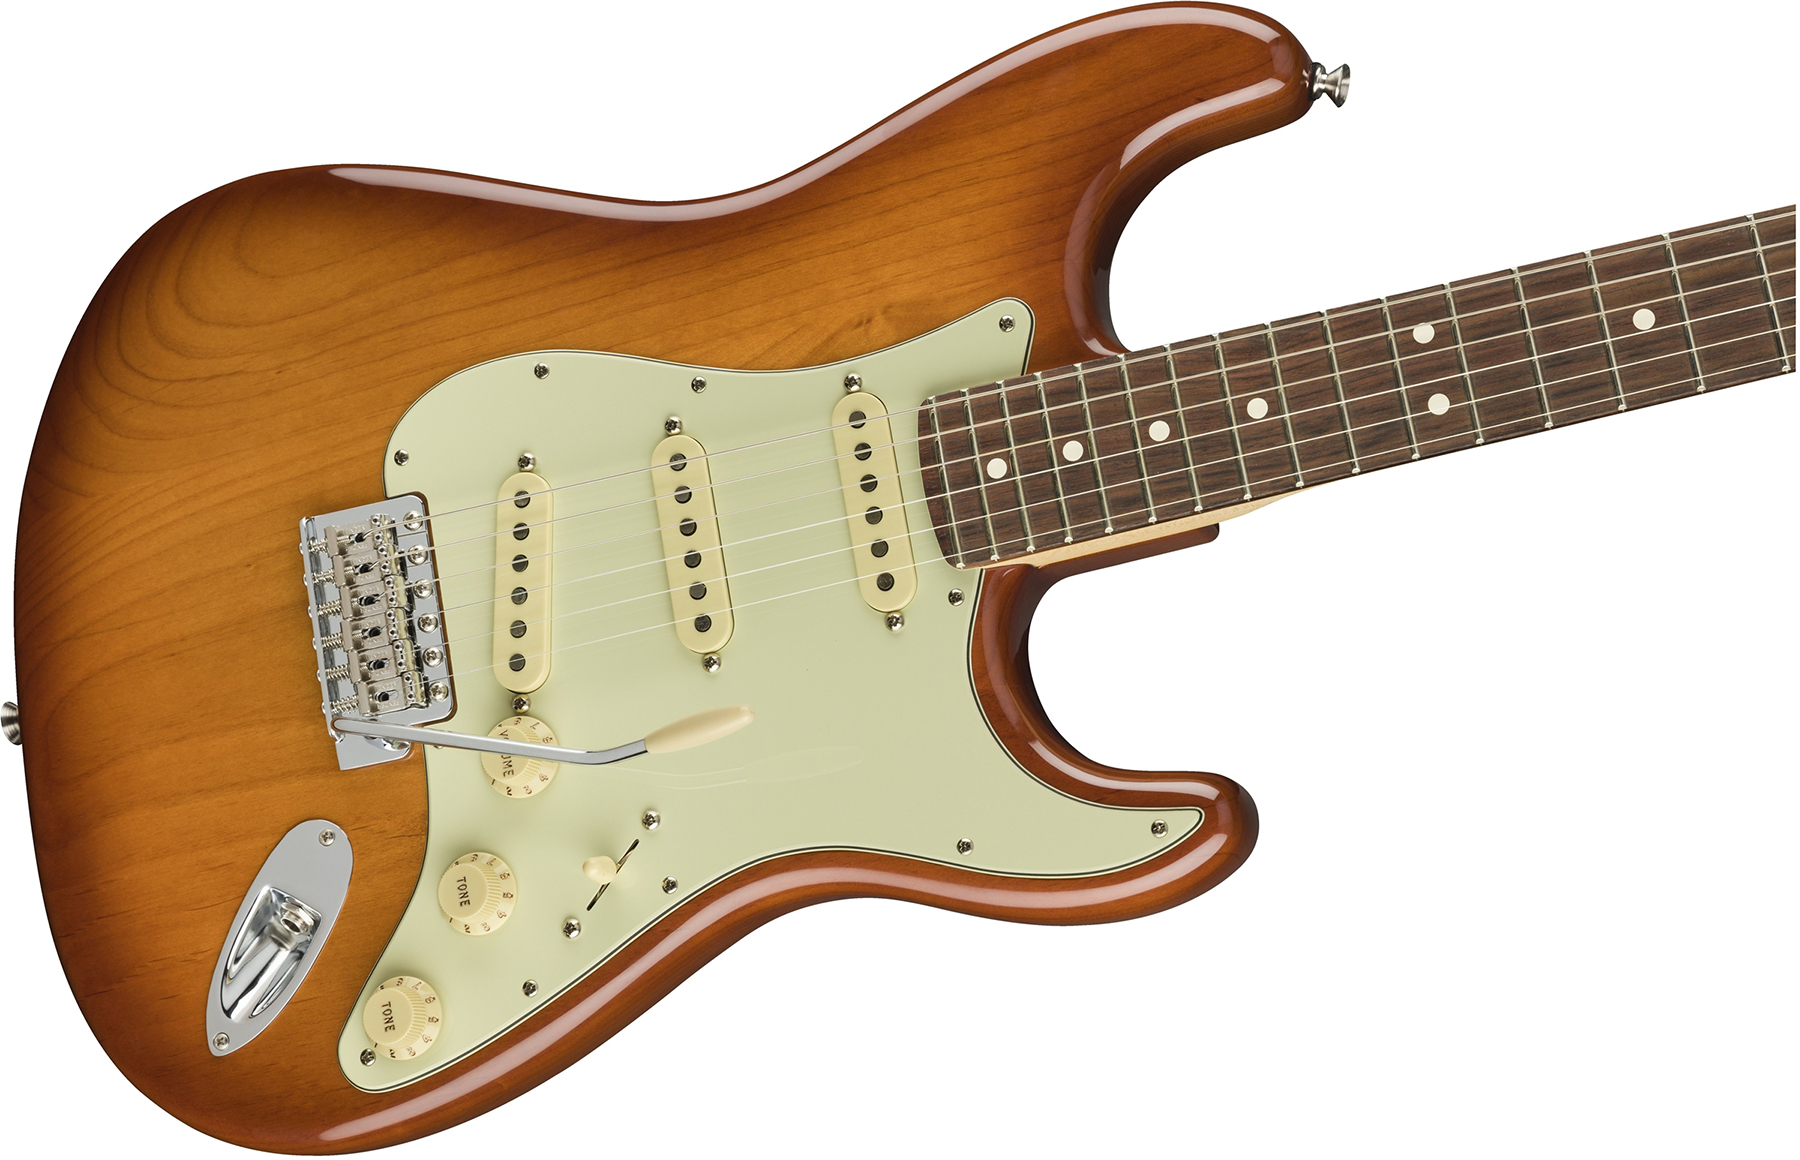 Fender Strat American Performer Usa Sss Rw - Honey Burst - Guitarra eléctrica con forma de str. - Variation 5